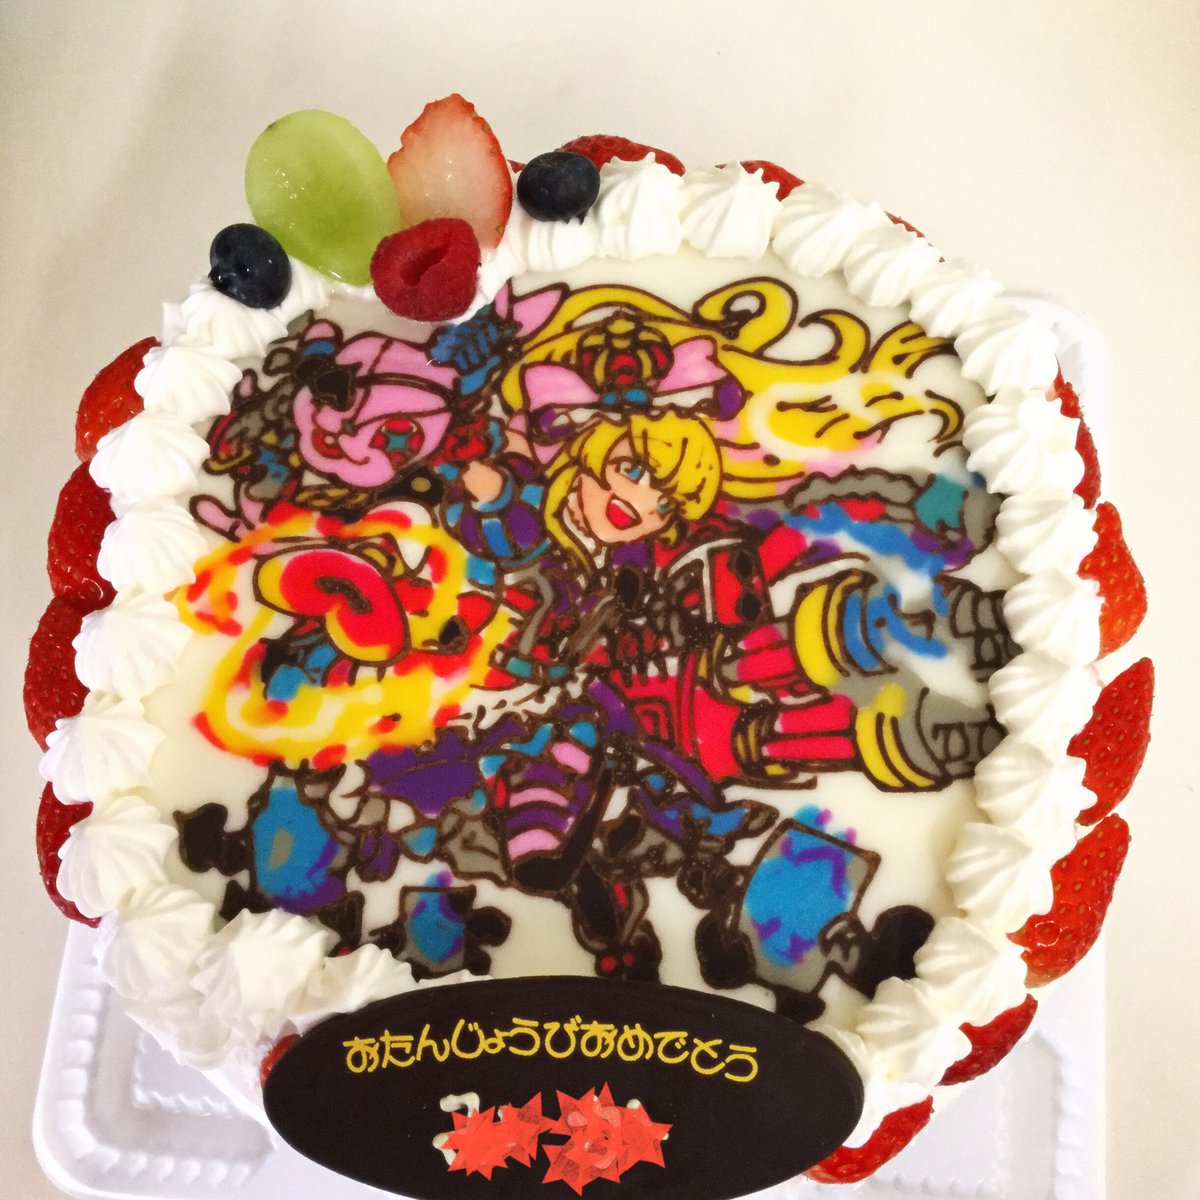 シャンテリー洋菓子店 على تويتر モンスト アリス モンスト 可児市キャラクターケーキ 多治見市キャラクターケーキ